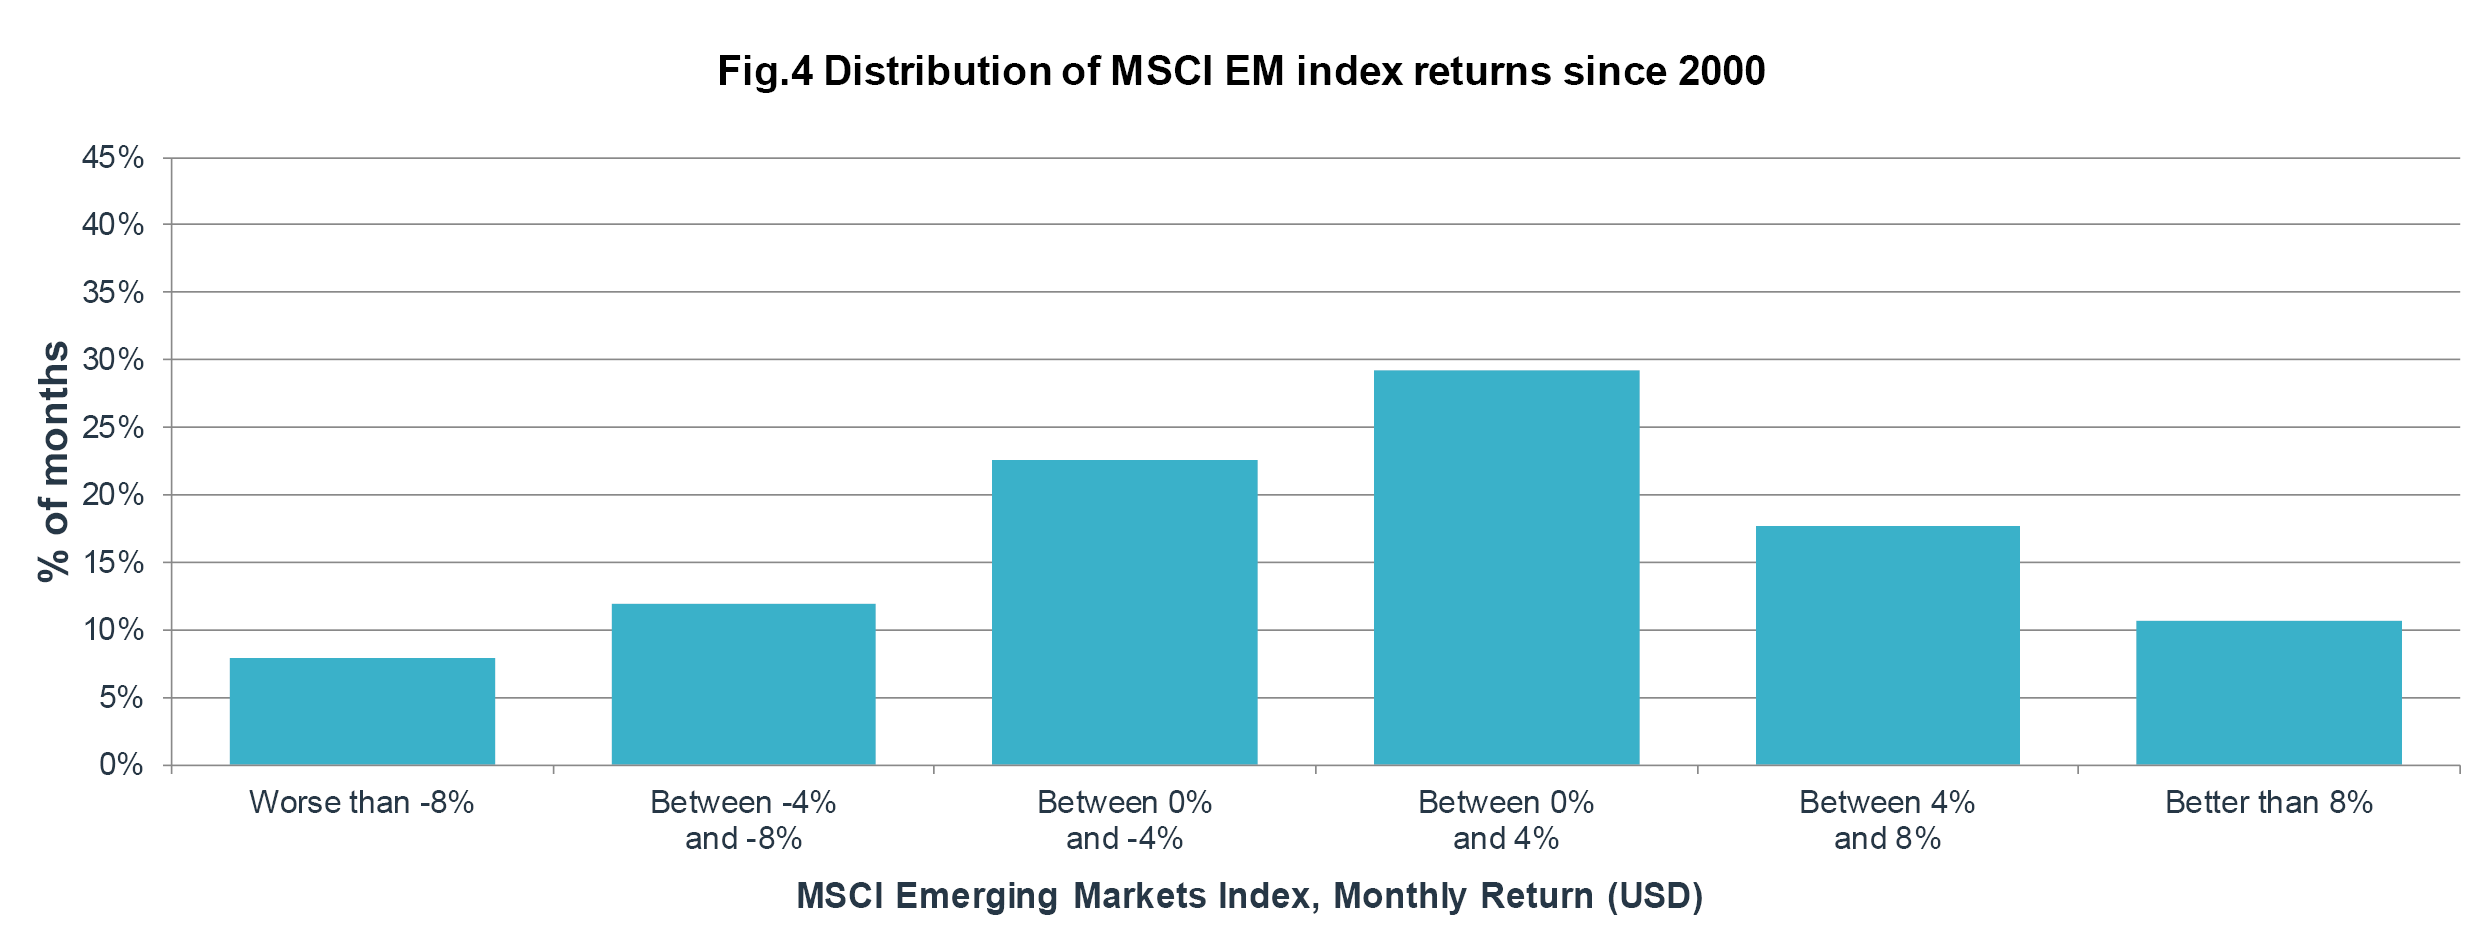 Distribution of MSCI EM index